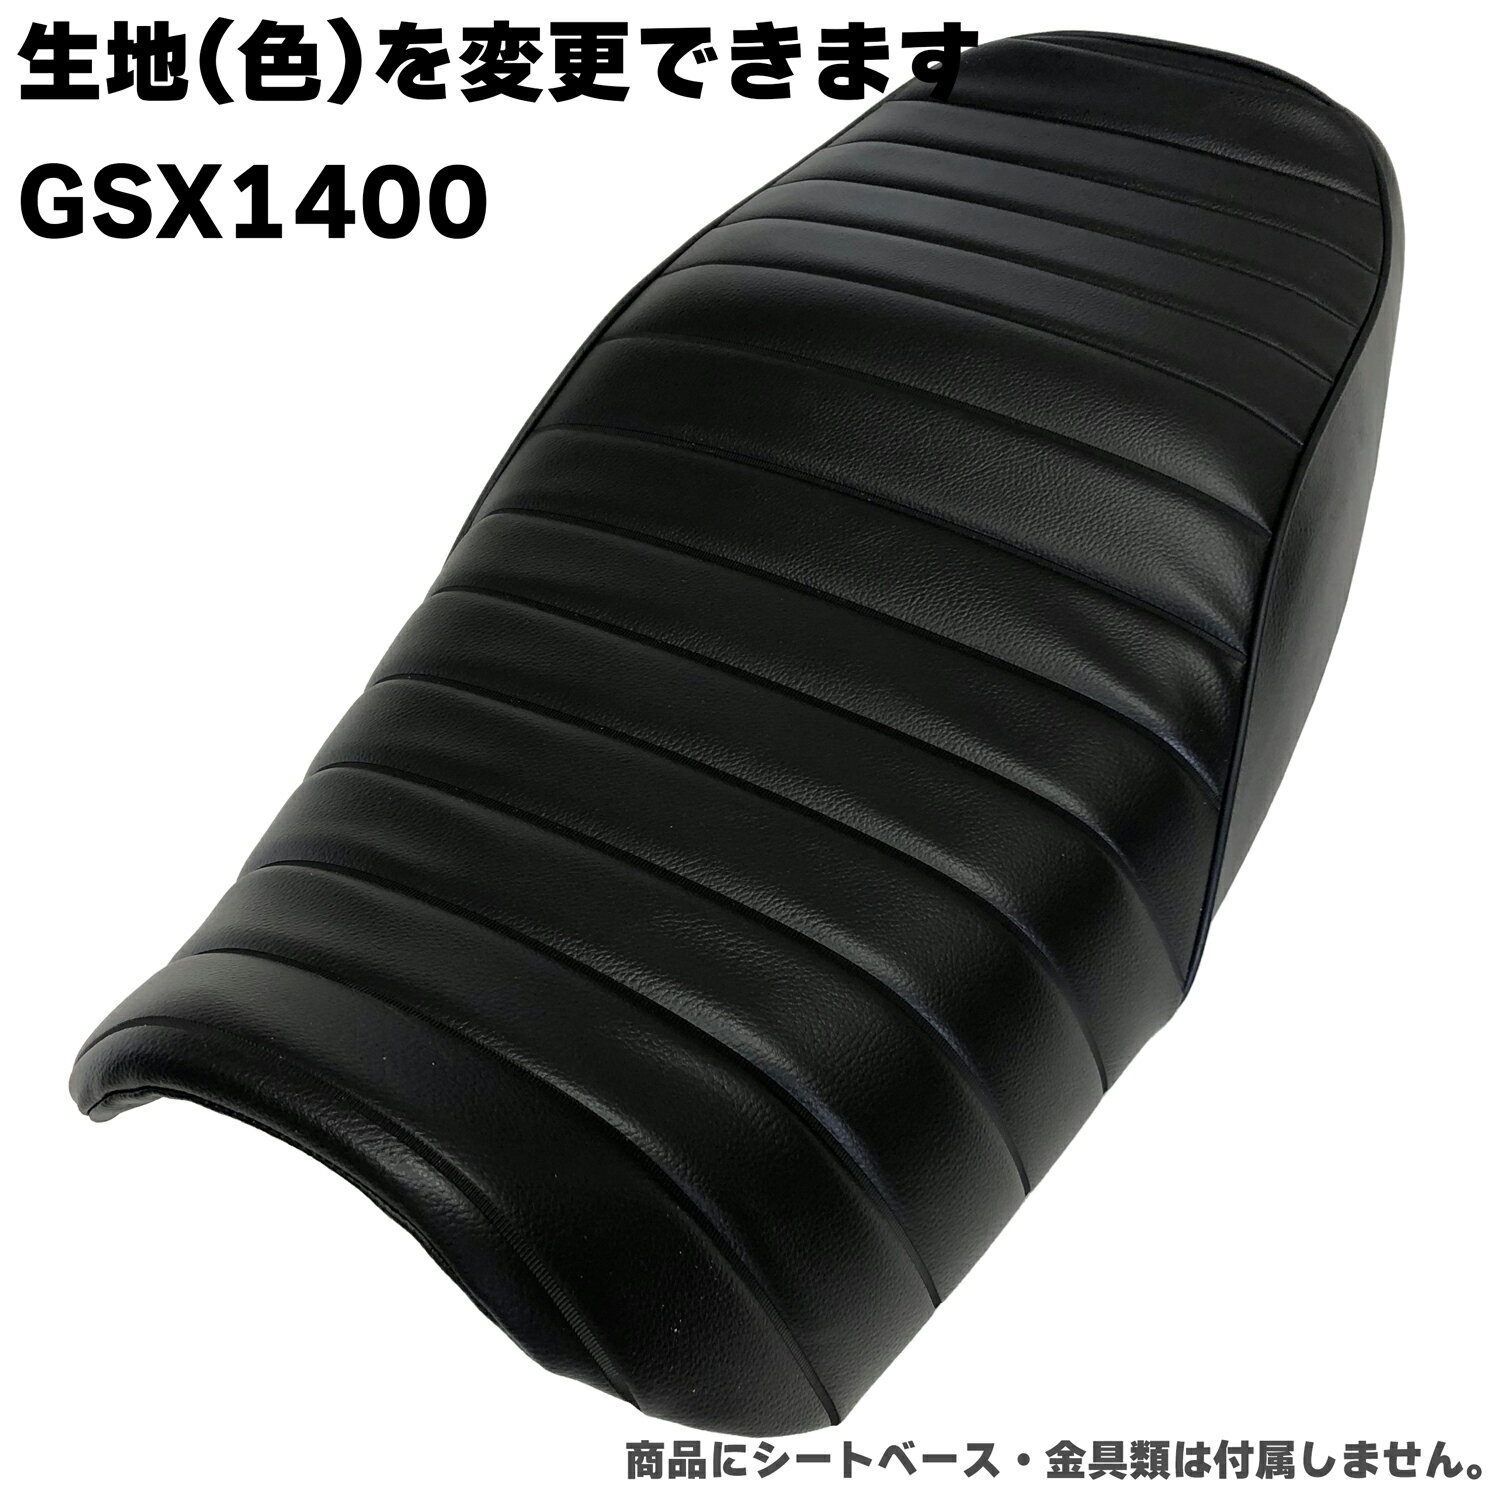 【在庫有り】GSX1400 全年式 カスタム シートカバー 